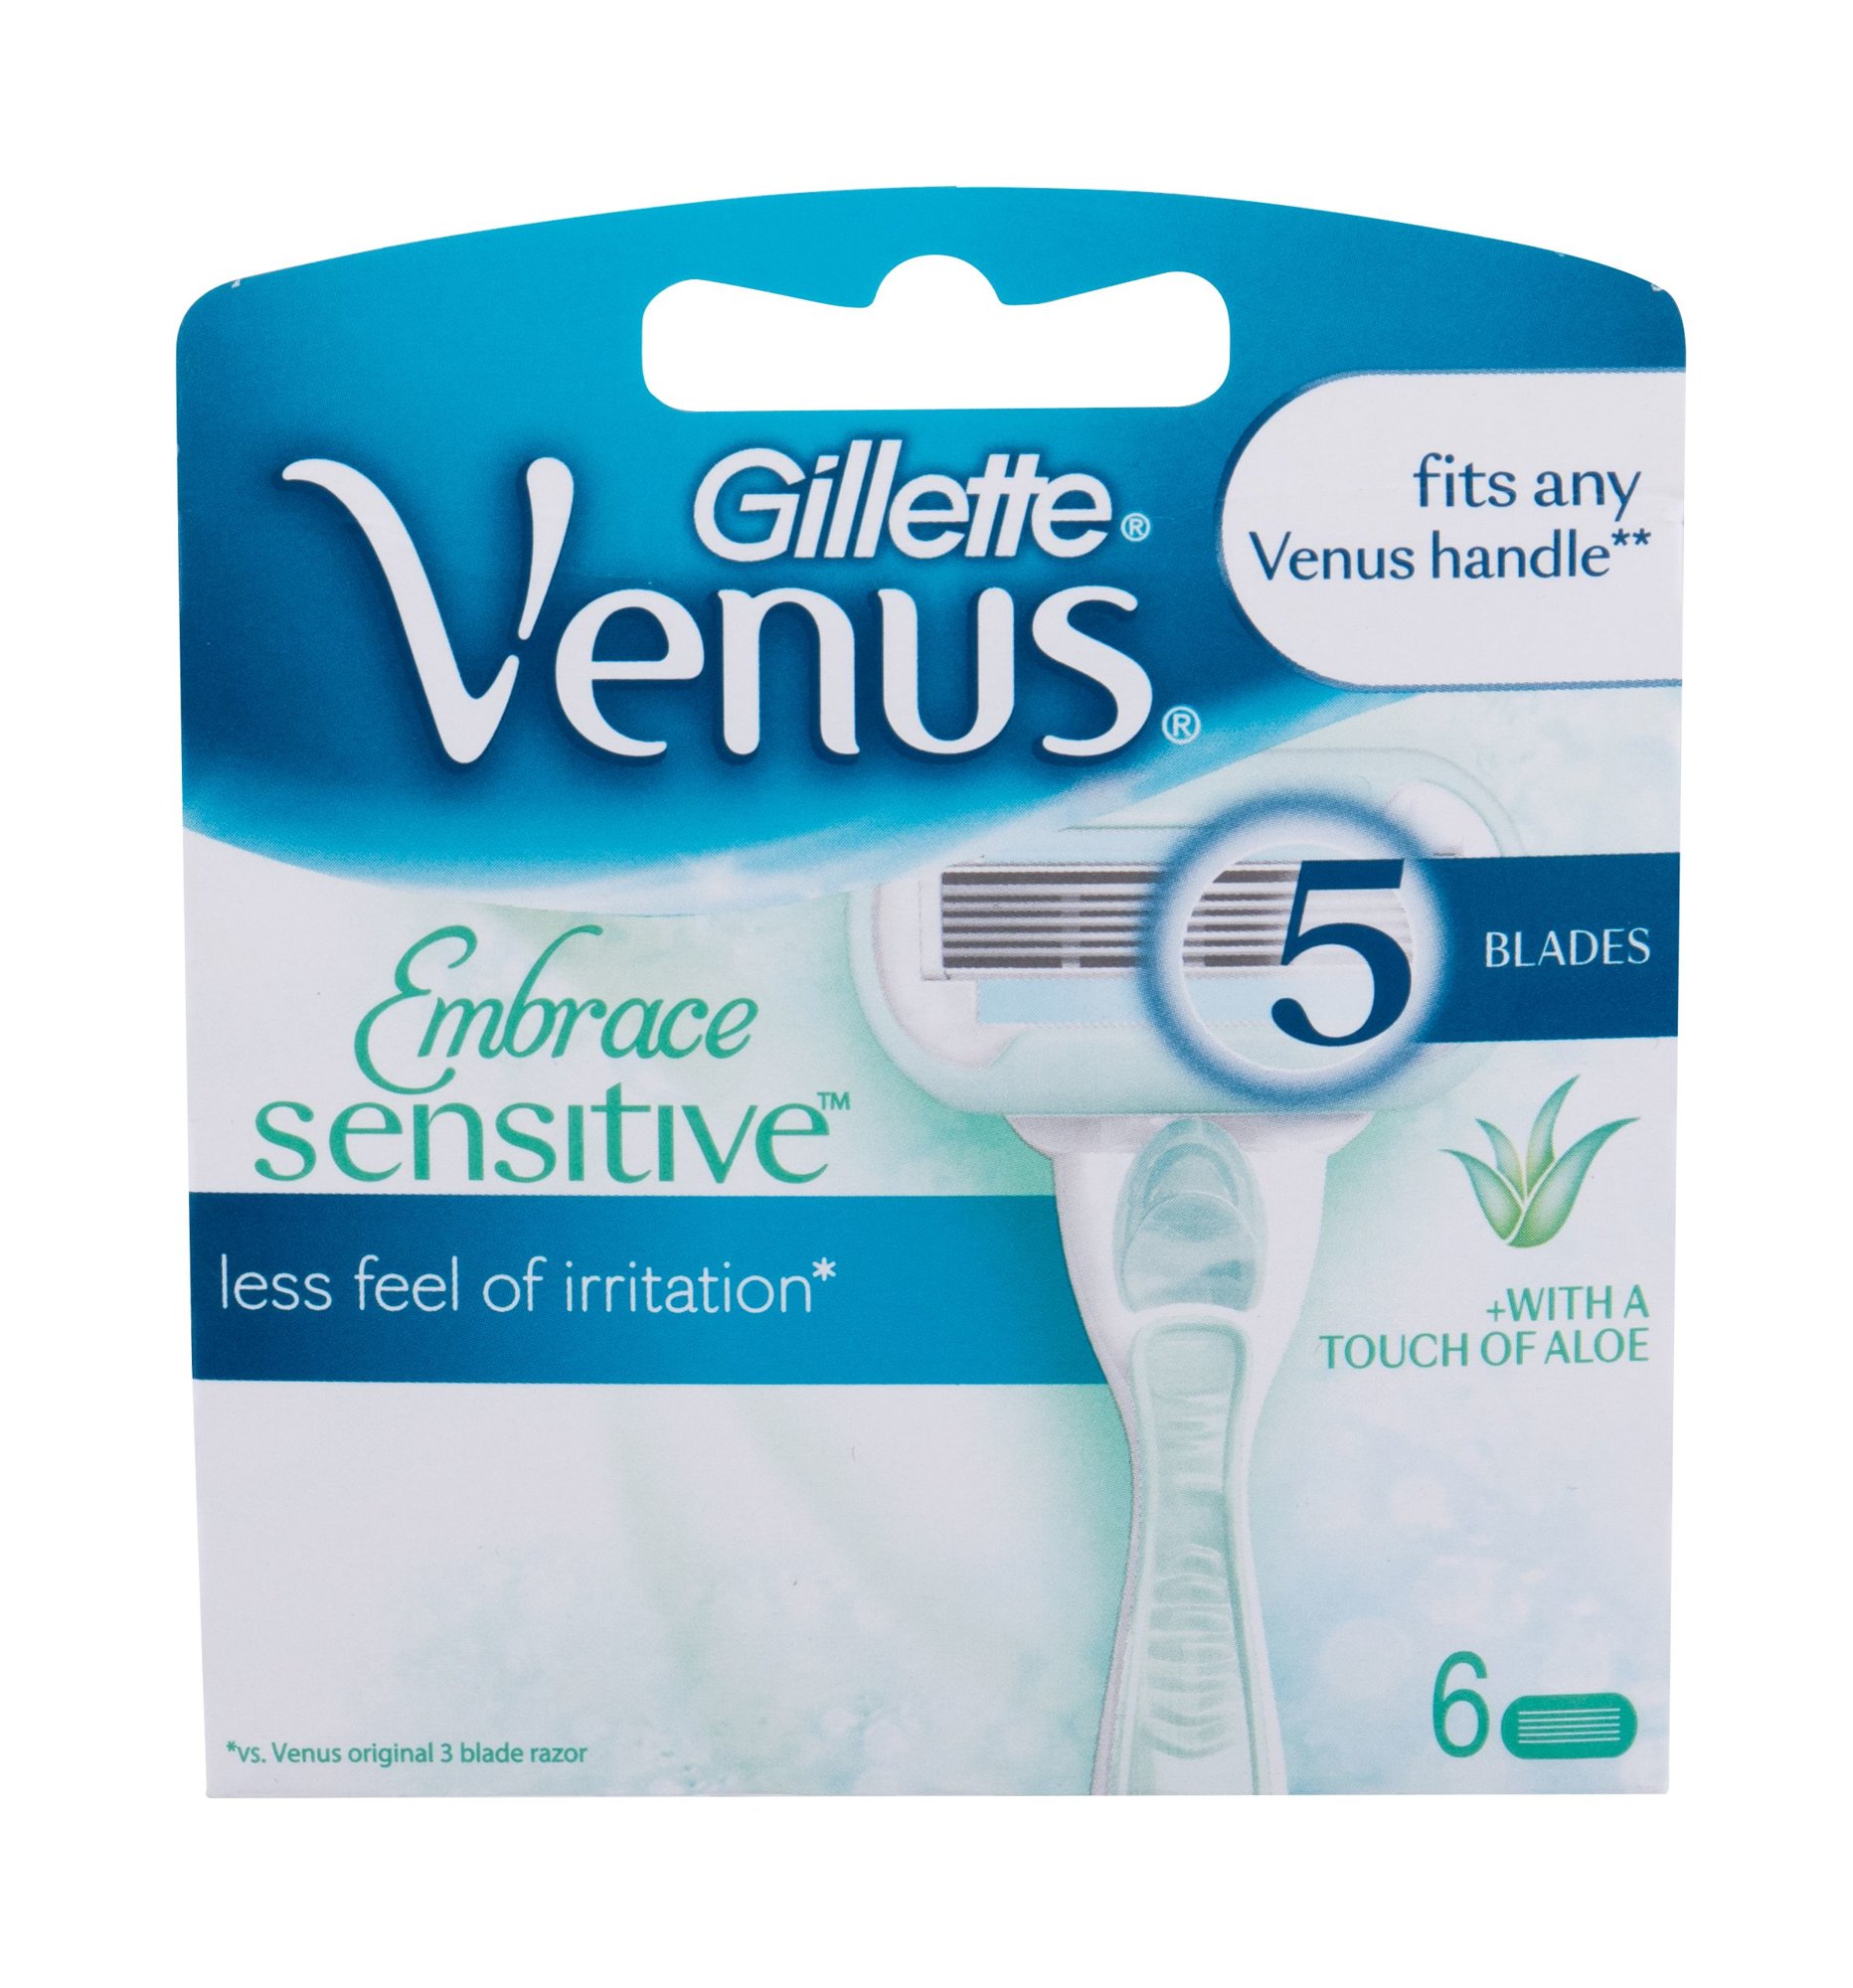 Gillette Venus Embrace Sensitive skustuvo galvutė